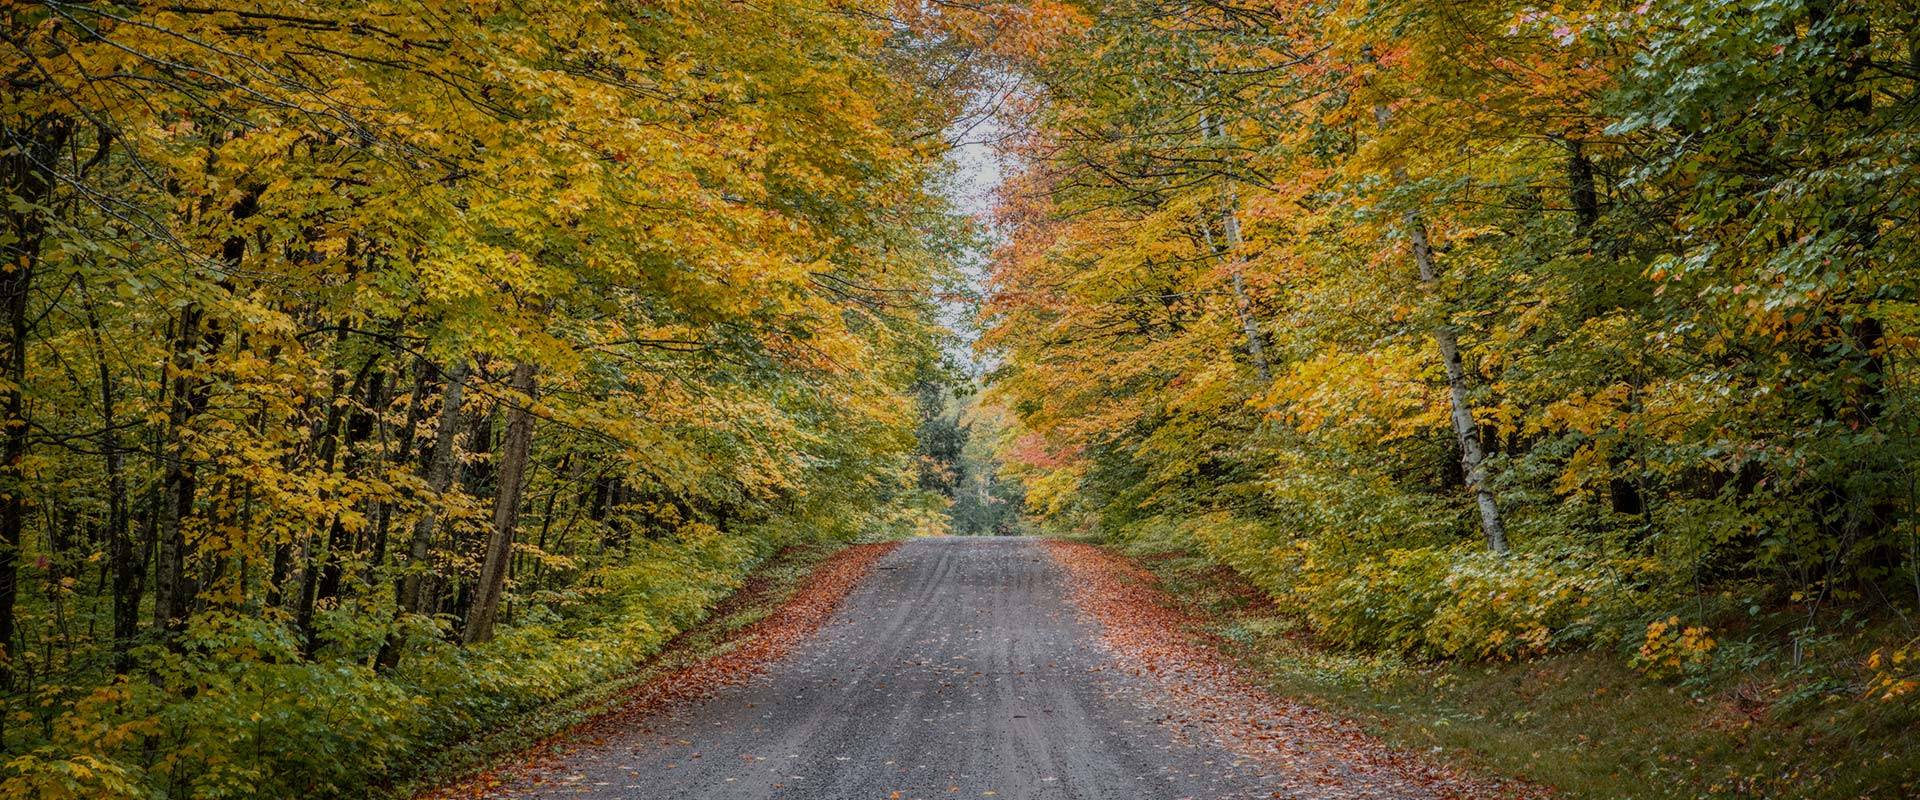 Autumn Empty Road